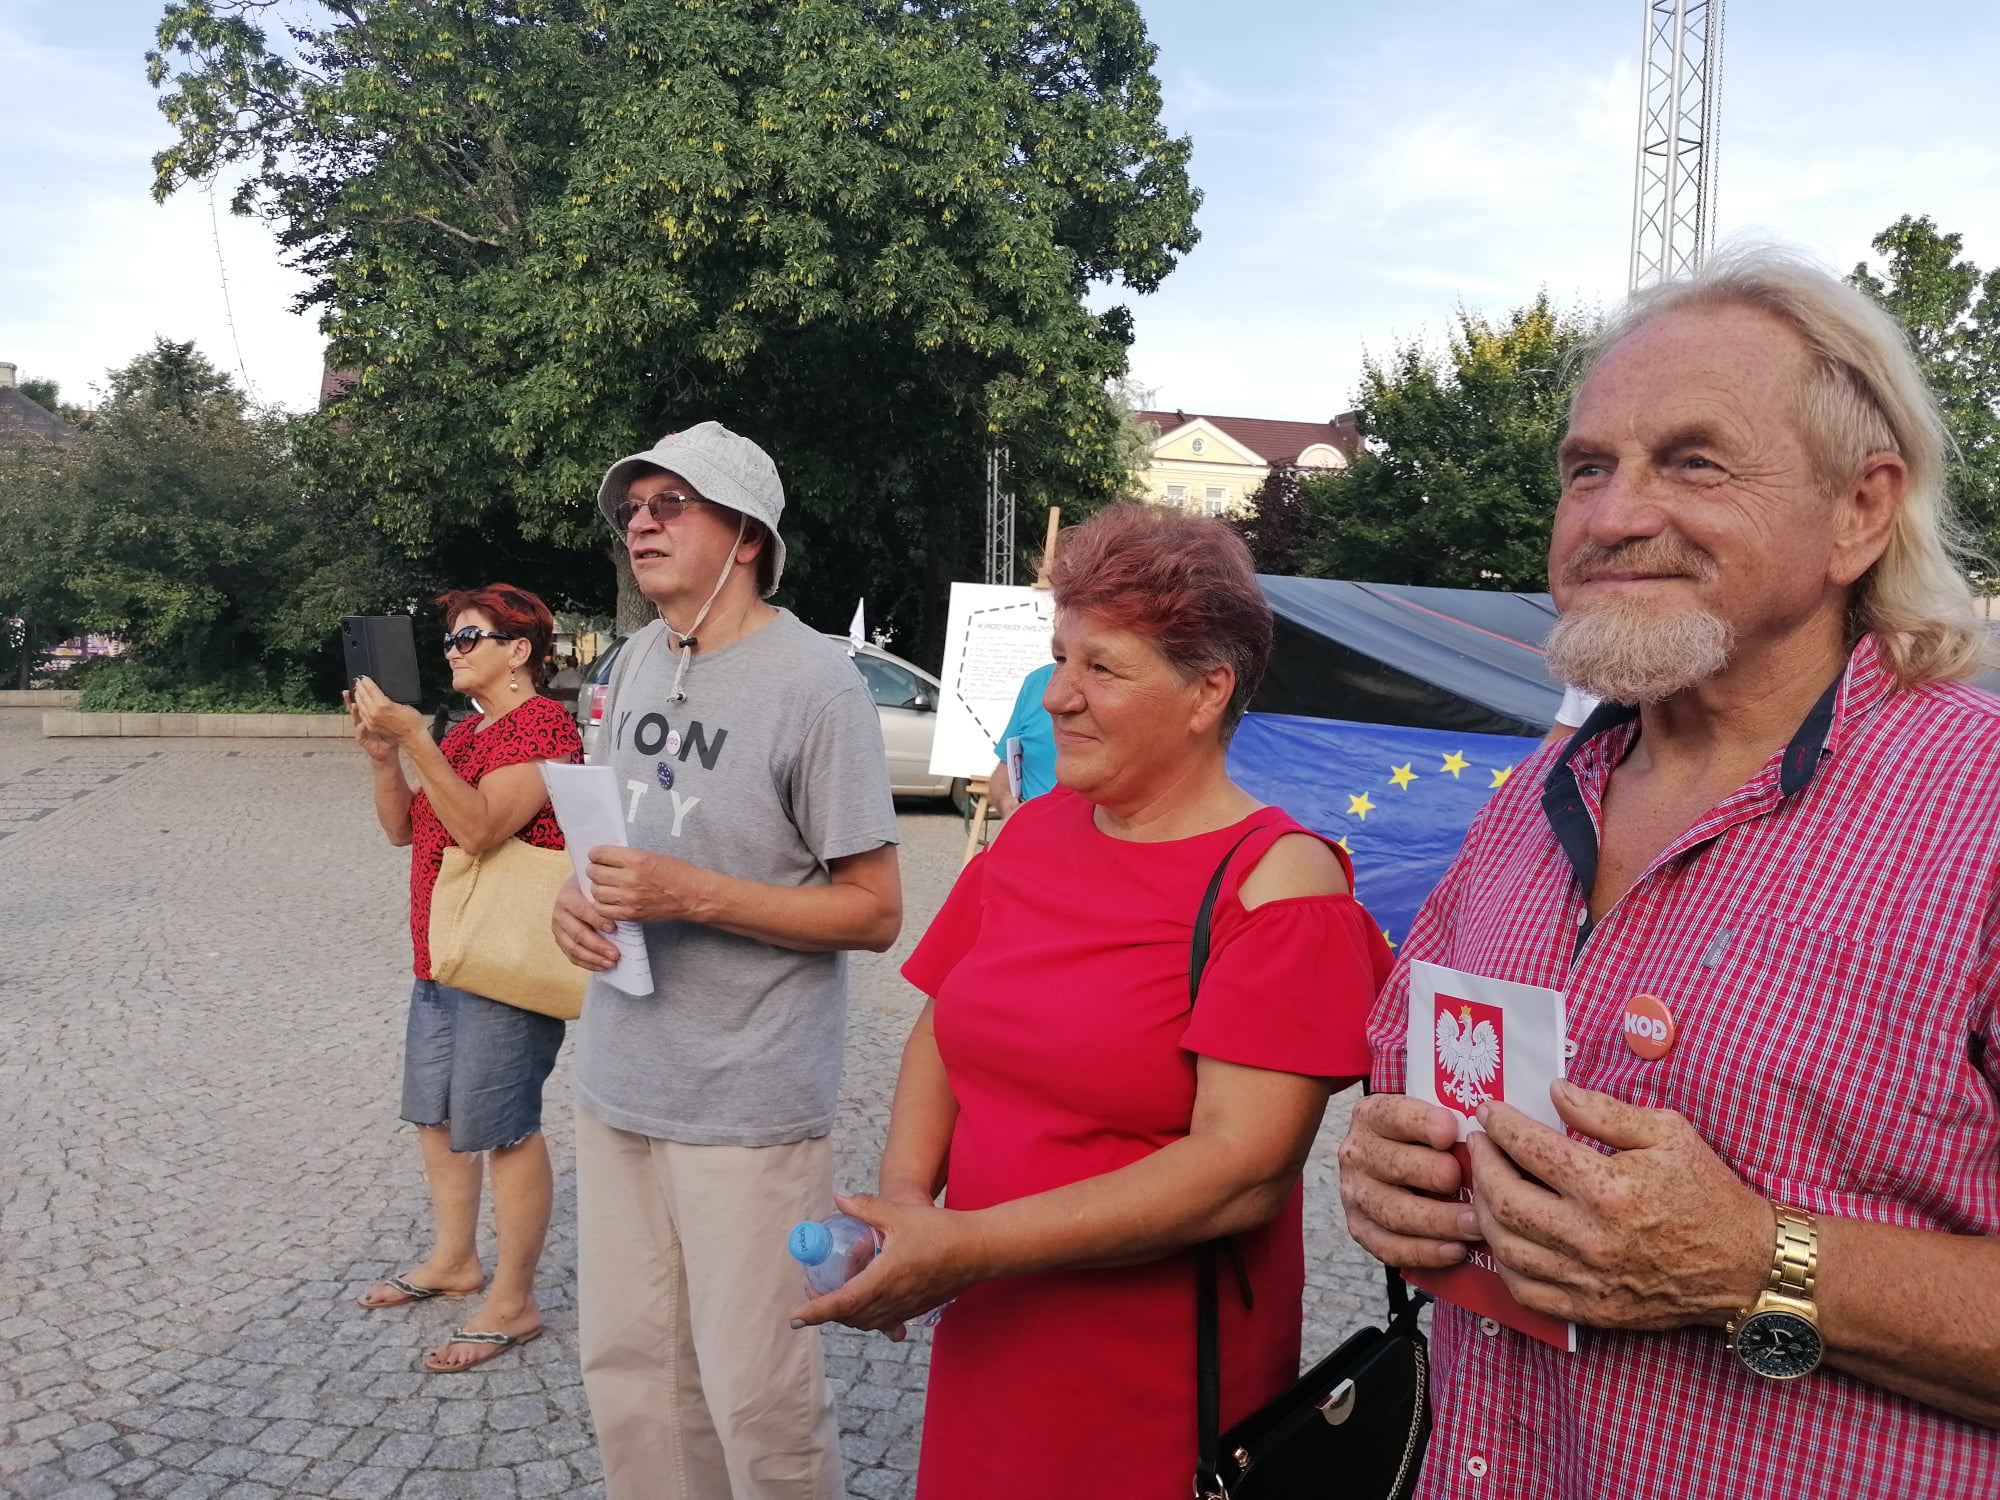 Chełm, Puławy, Lublin i Zamość: Tour de Konstytucja na Lubelszczyźnie